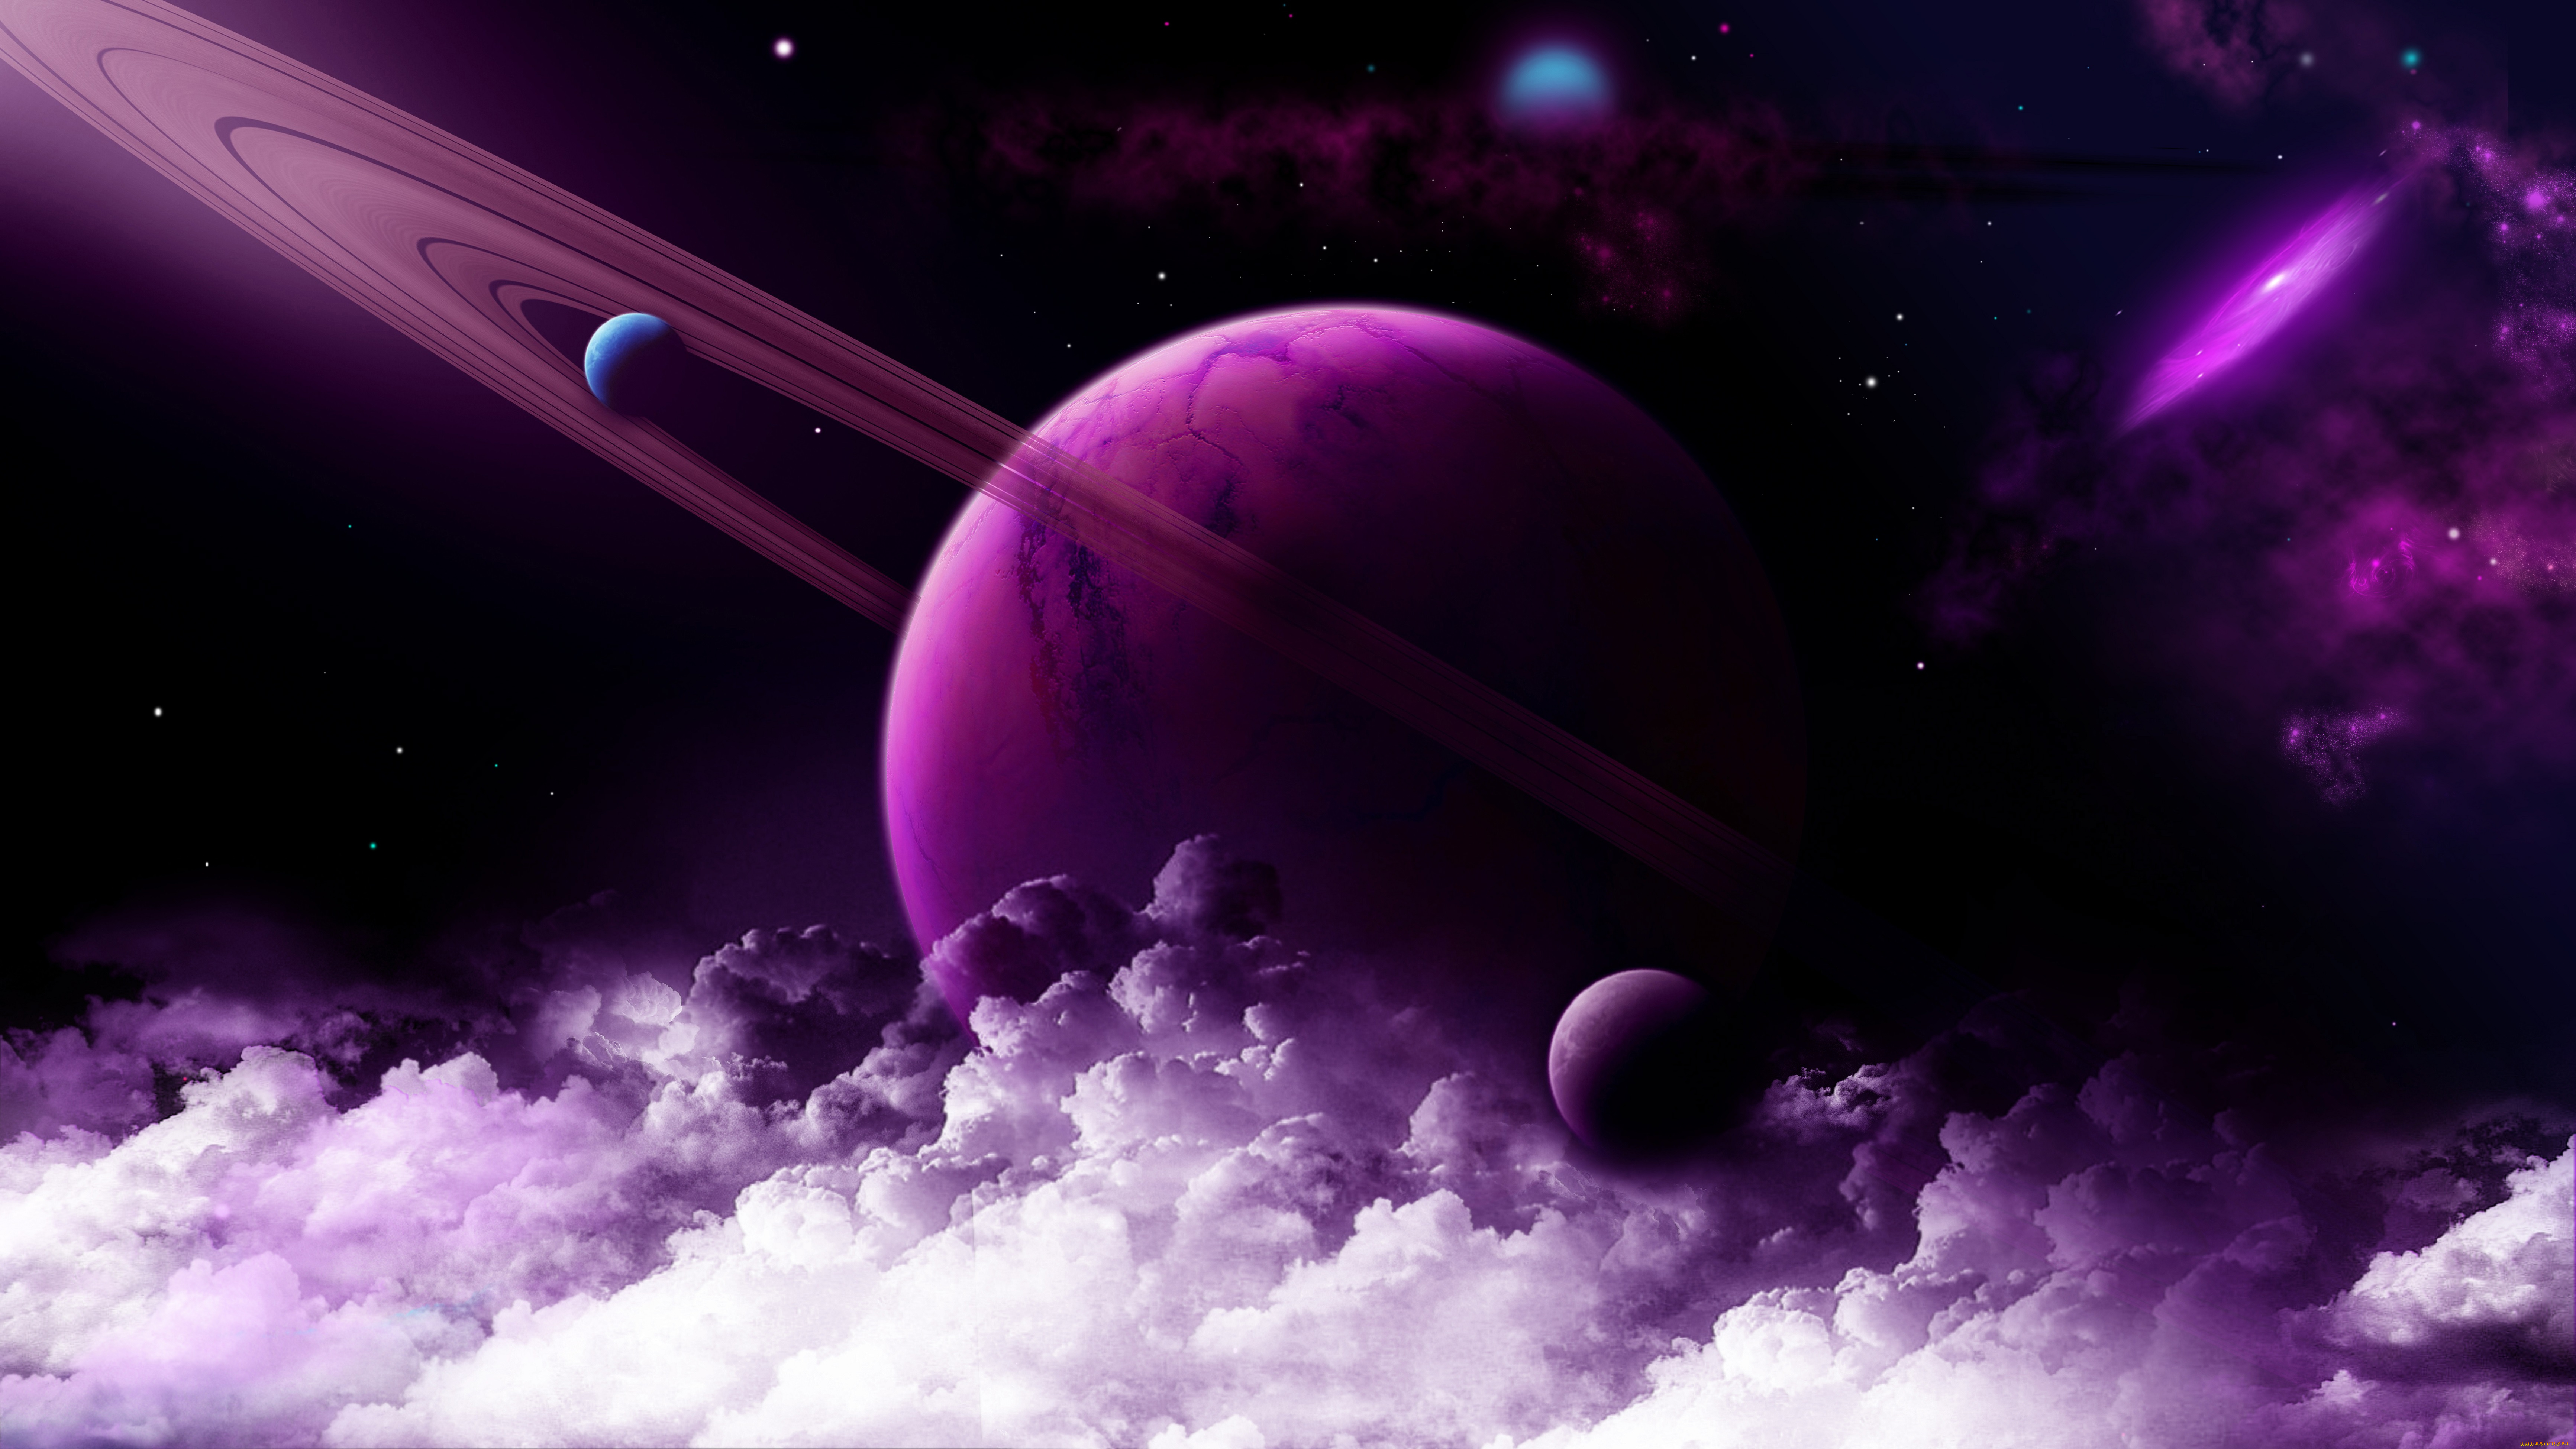 космос, арт, планета, нептун, облака, звёзды, галлактика, спутники, фиолетовая